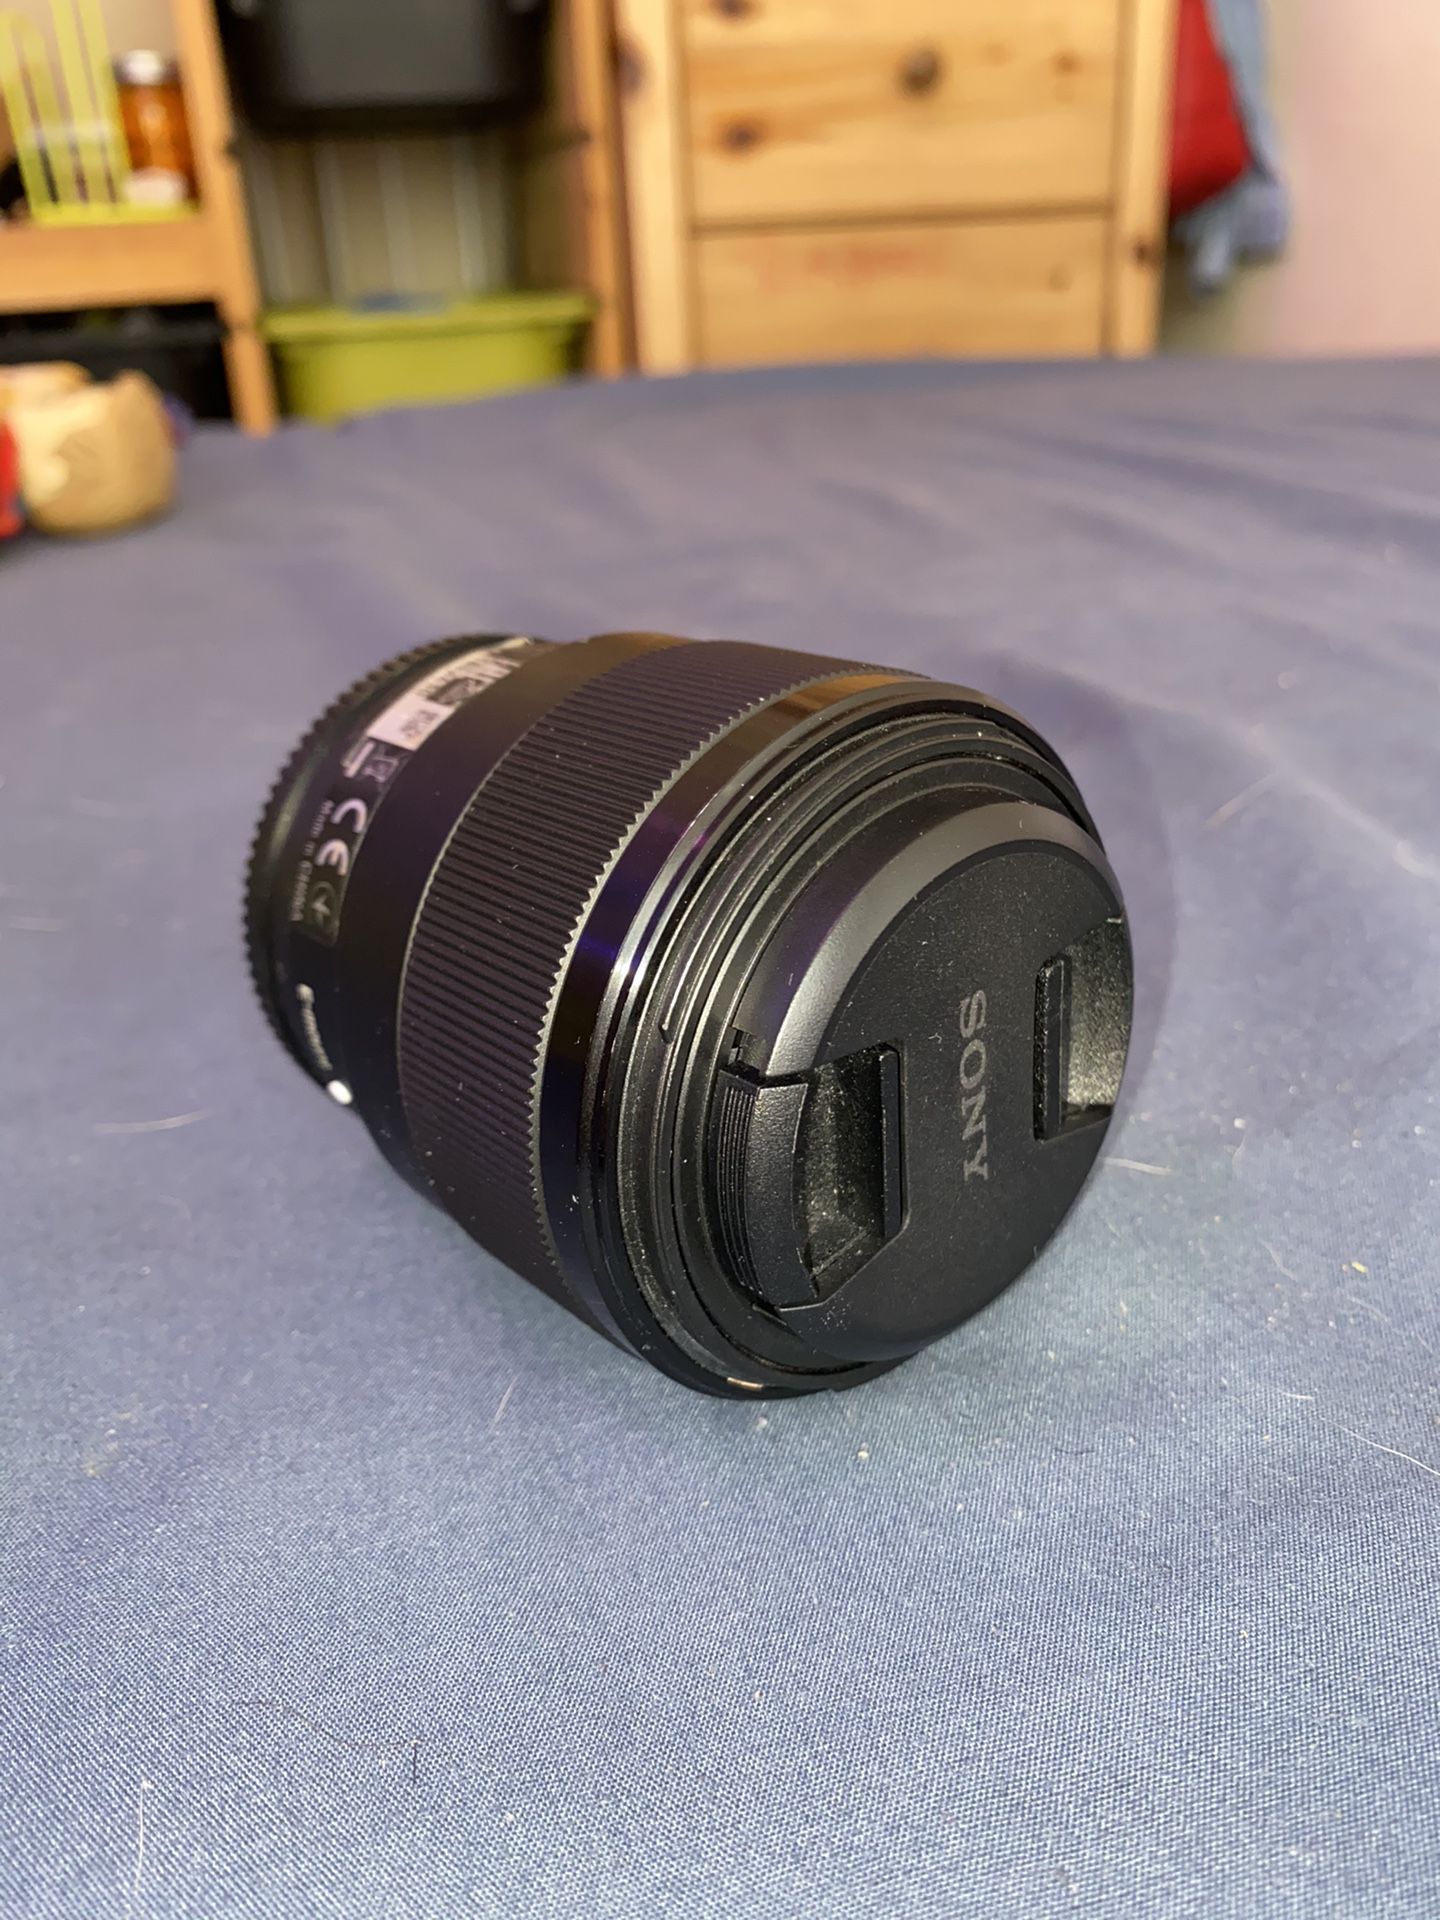 Sony 50mm 1.8 lens